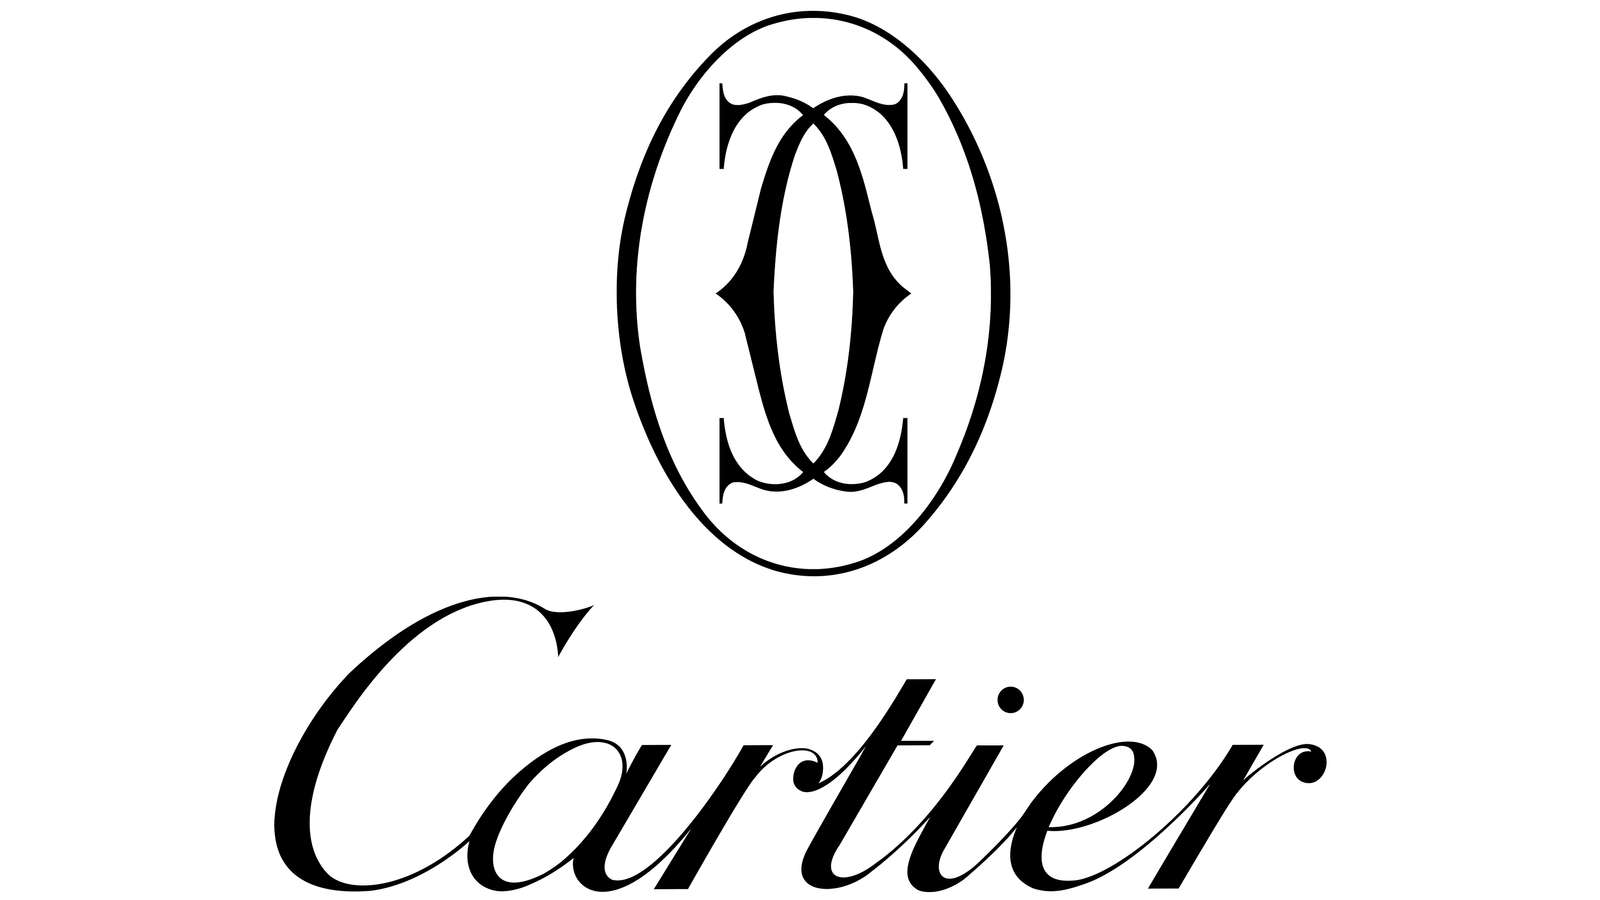 6 - rompecabezas - Cartier puzzle online a partir de foto